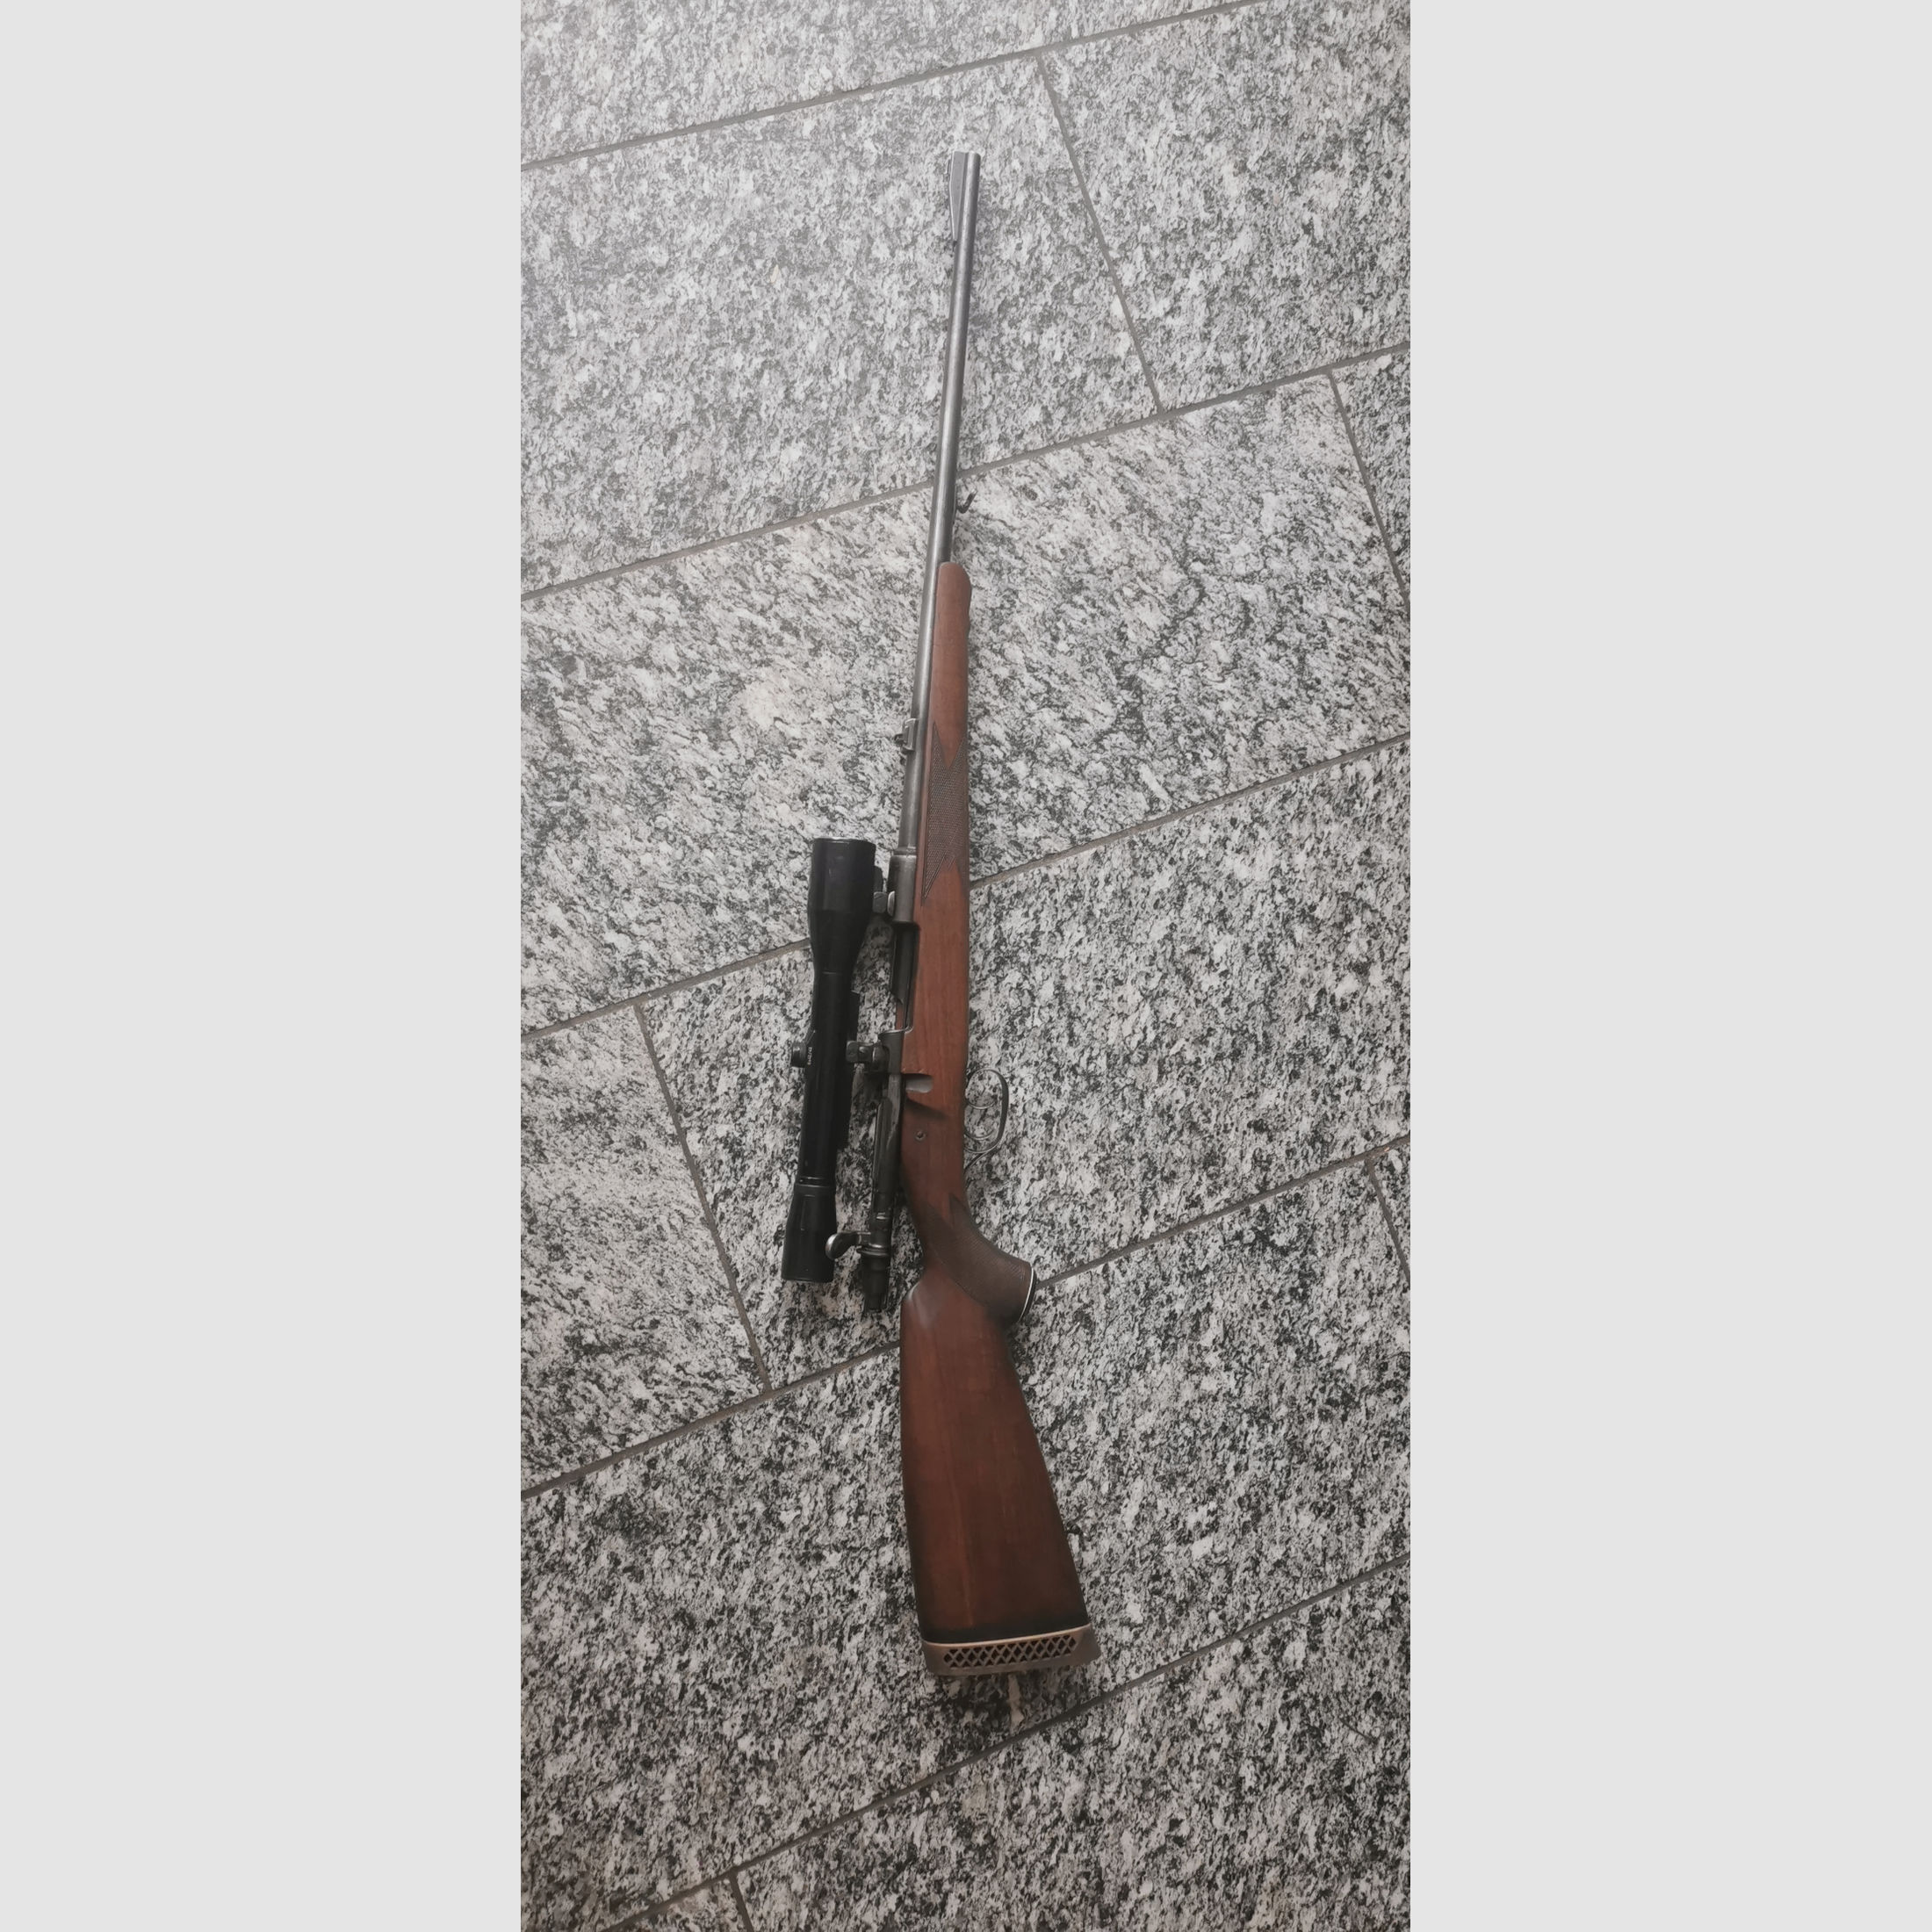 Mauser 98 Jagd